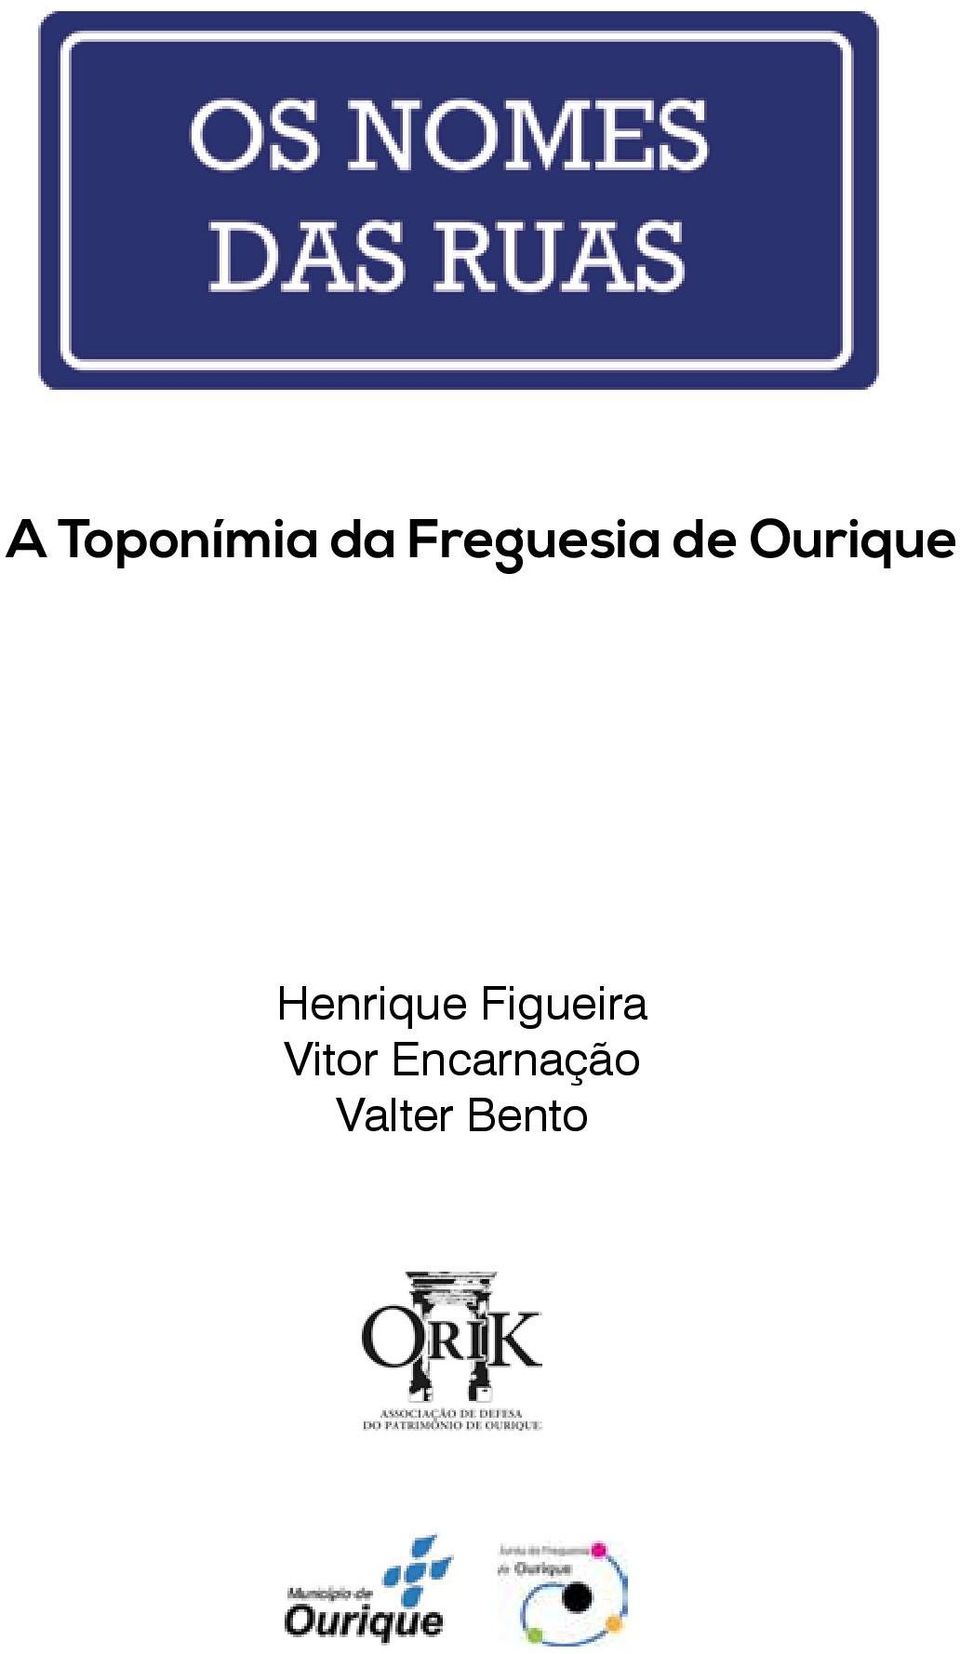 Henrique Figueira